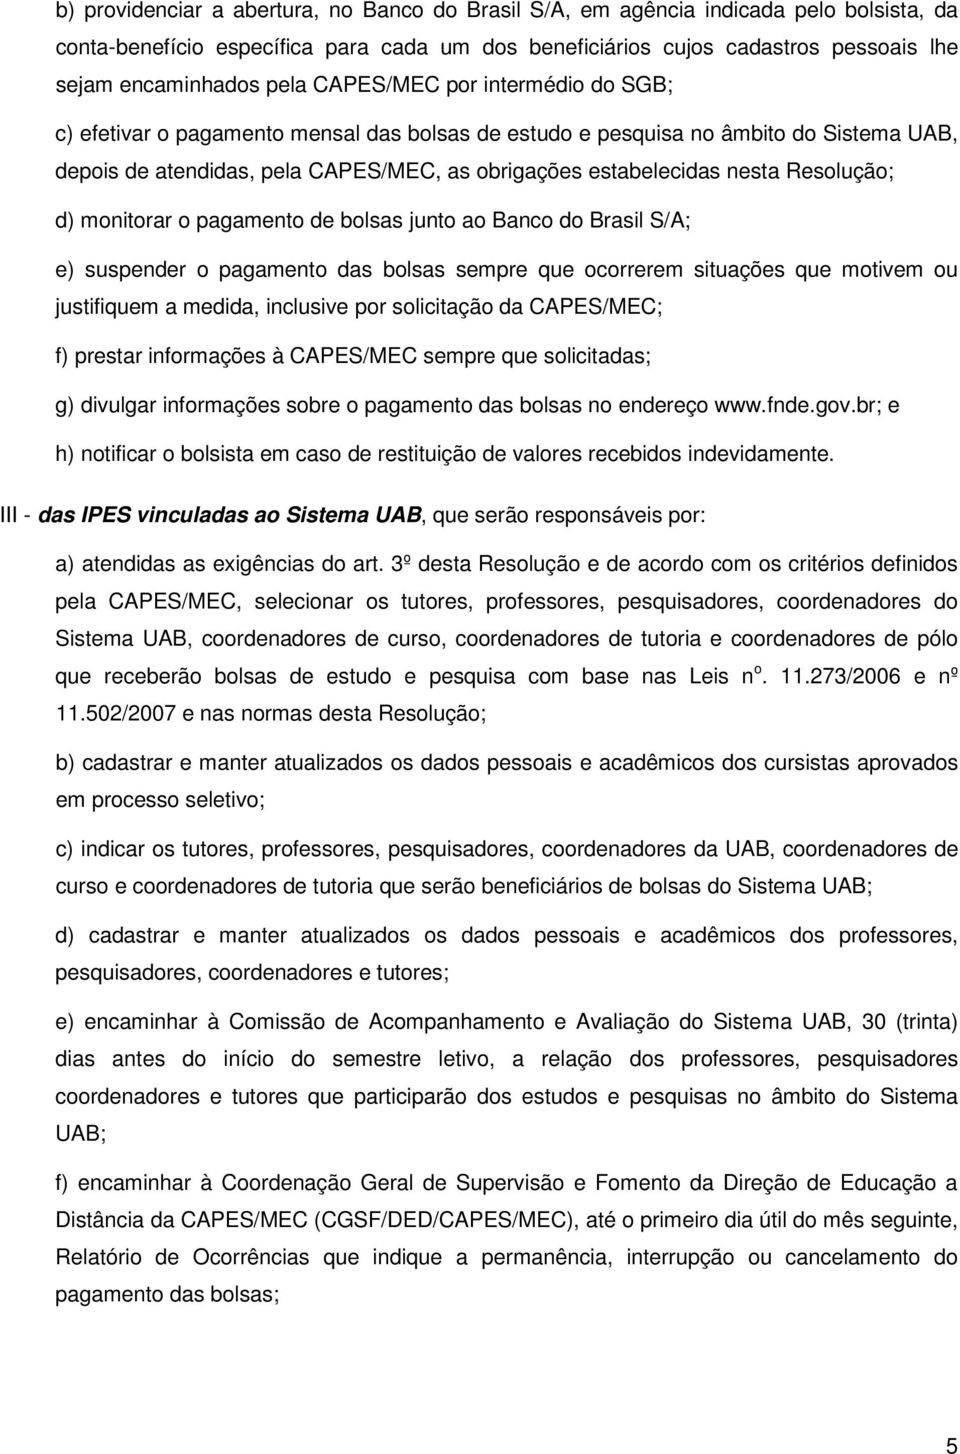 Resolução; d) monitorar o pagamento de bolsas junto ao Banco do Brasil S/A; e) suspender o pagamento das bolsas sempre que ocorrerem situações que motivem ou justifiquem a medida, inclusive por